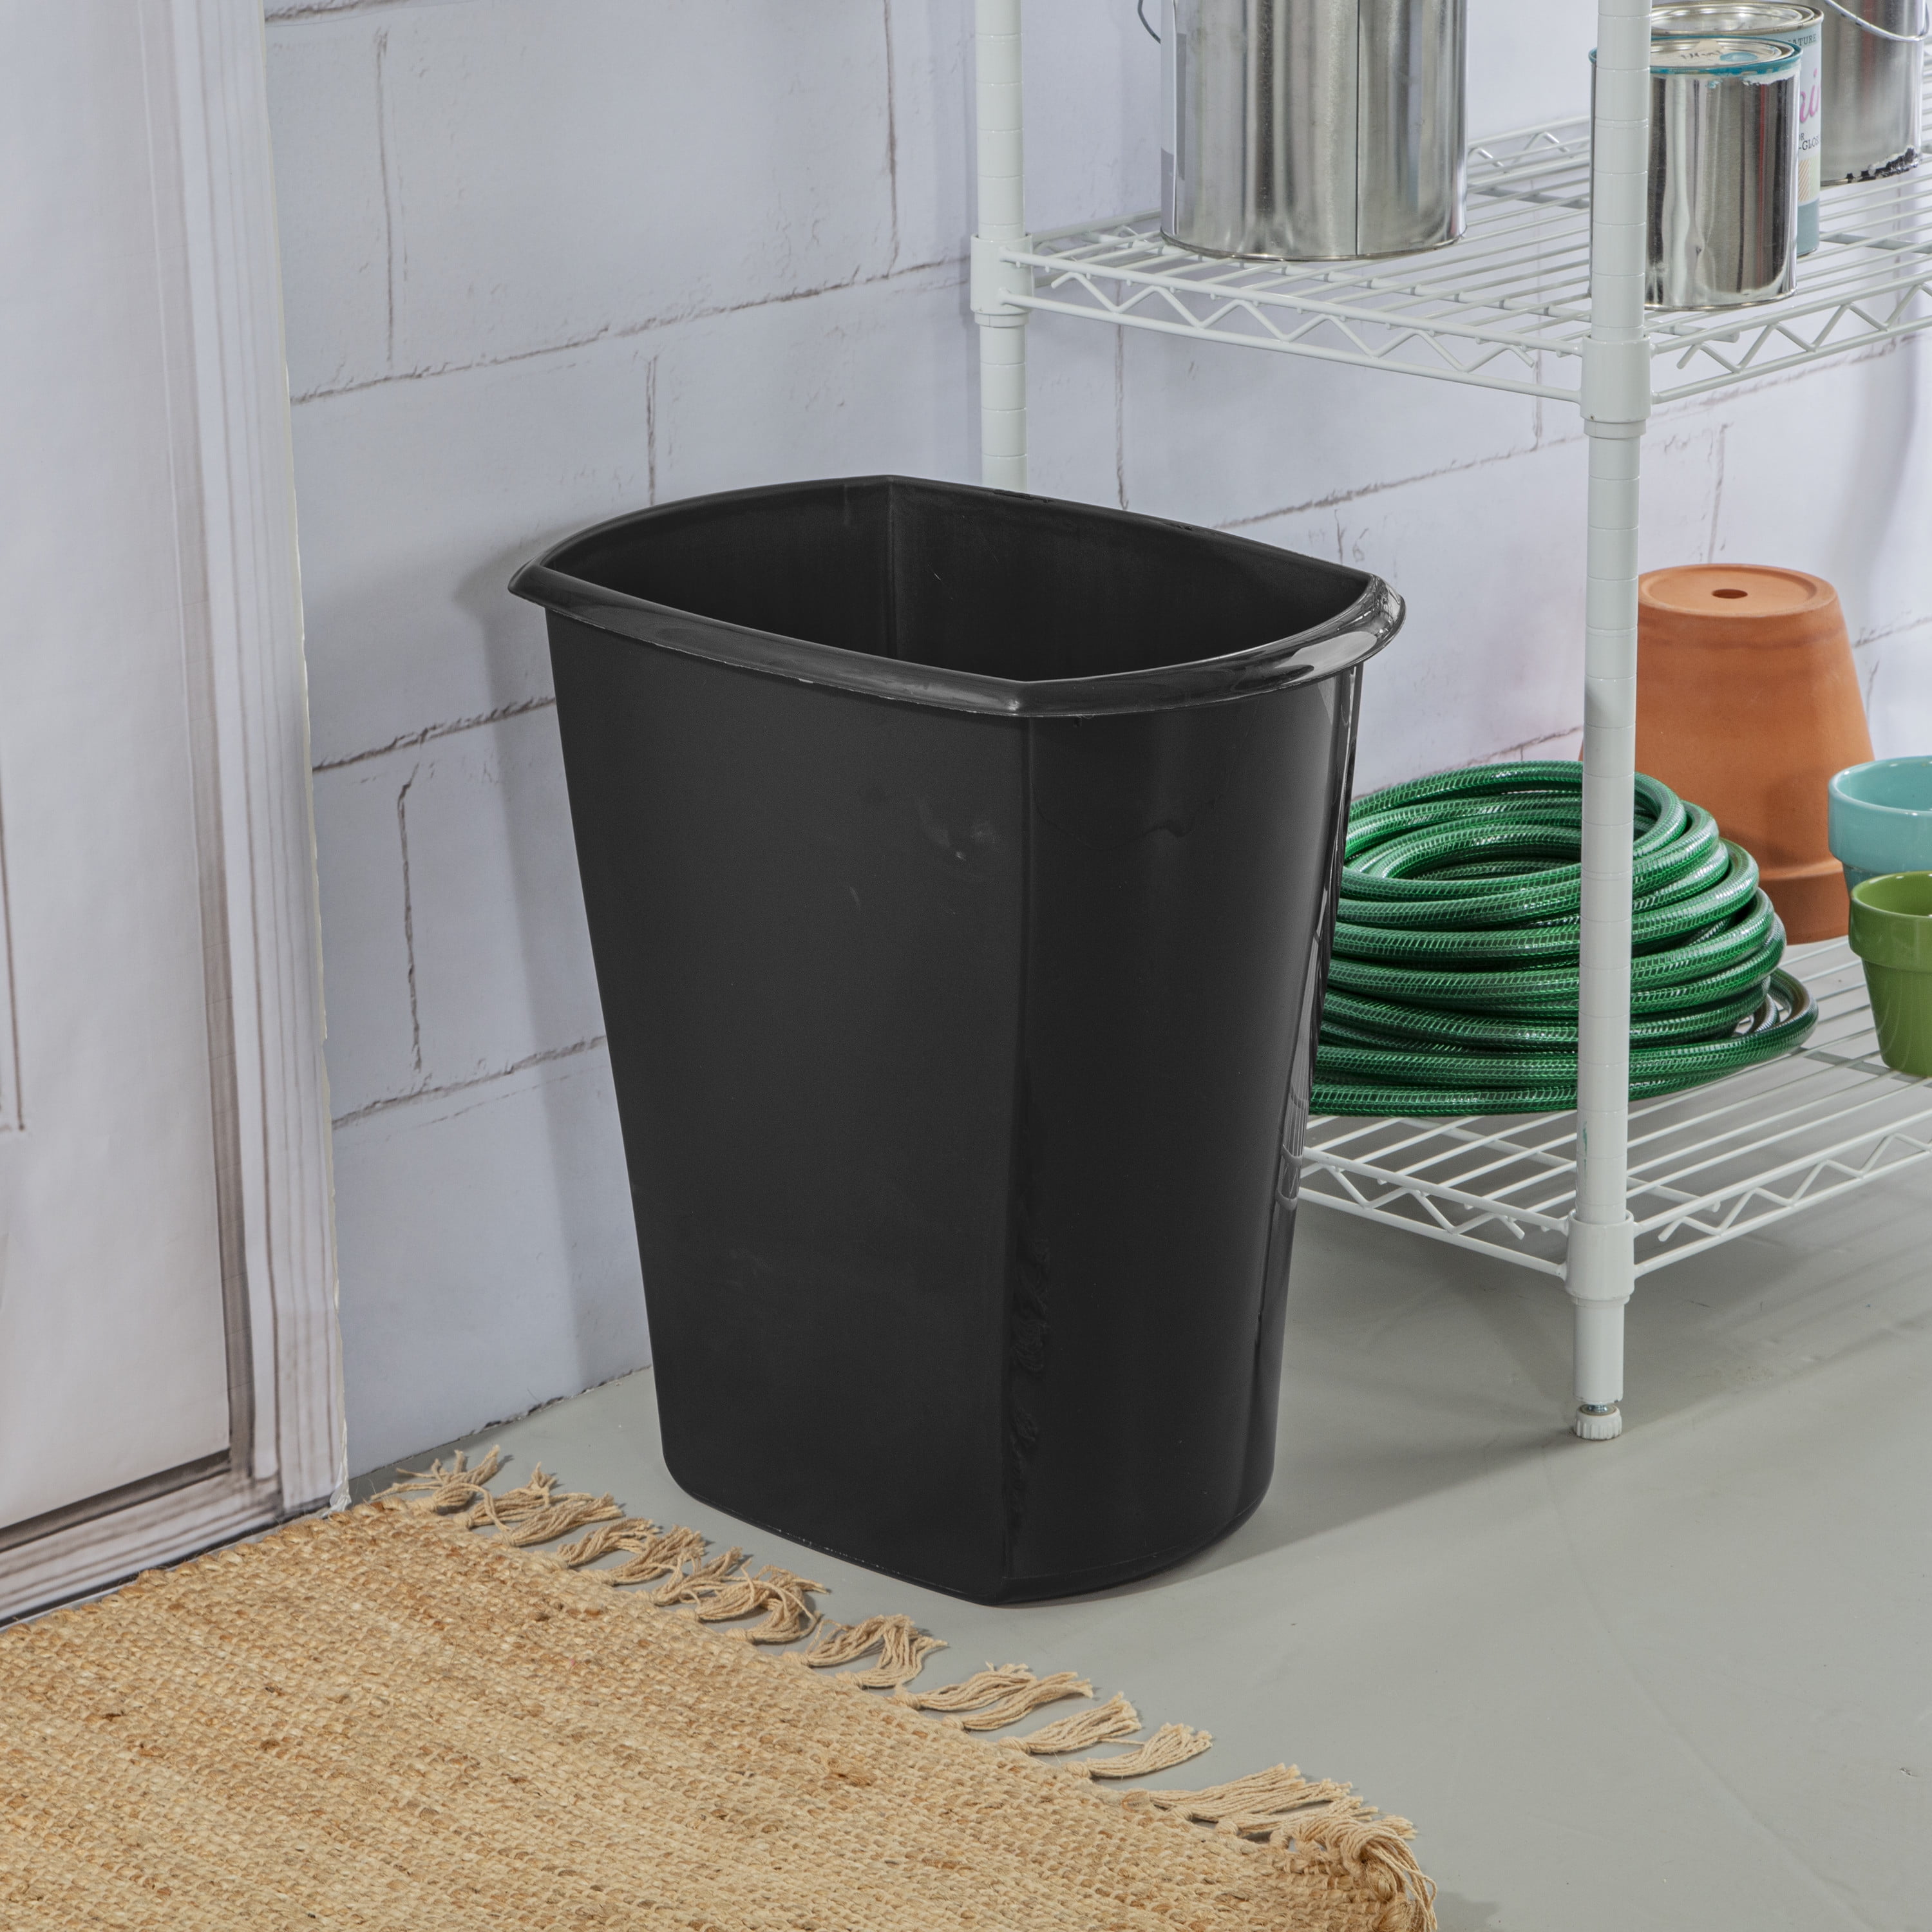 Storex Medium Waste Basket, 15 x 10.5 x 15 Inches, Black, Case of 6  (STX00710U06C)